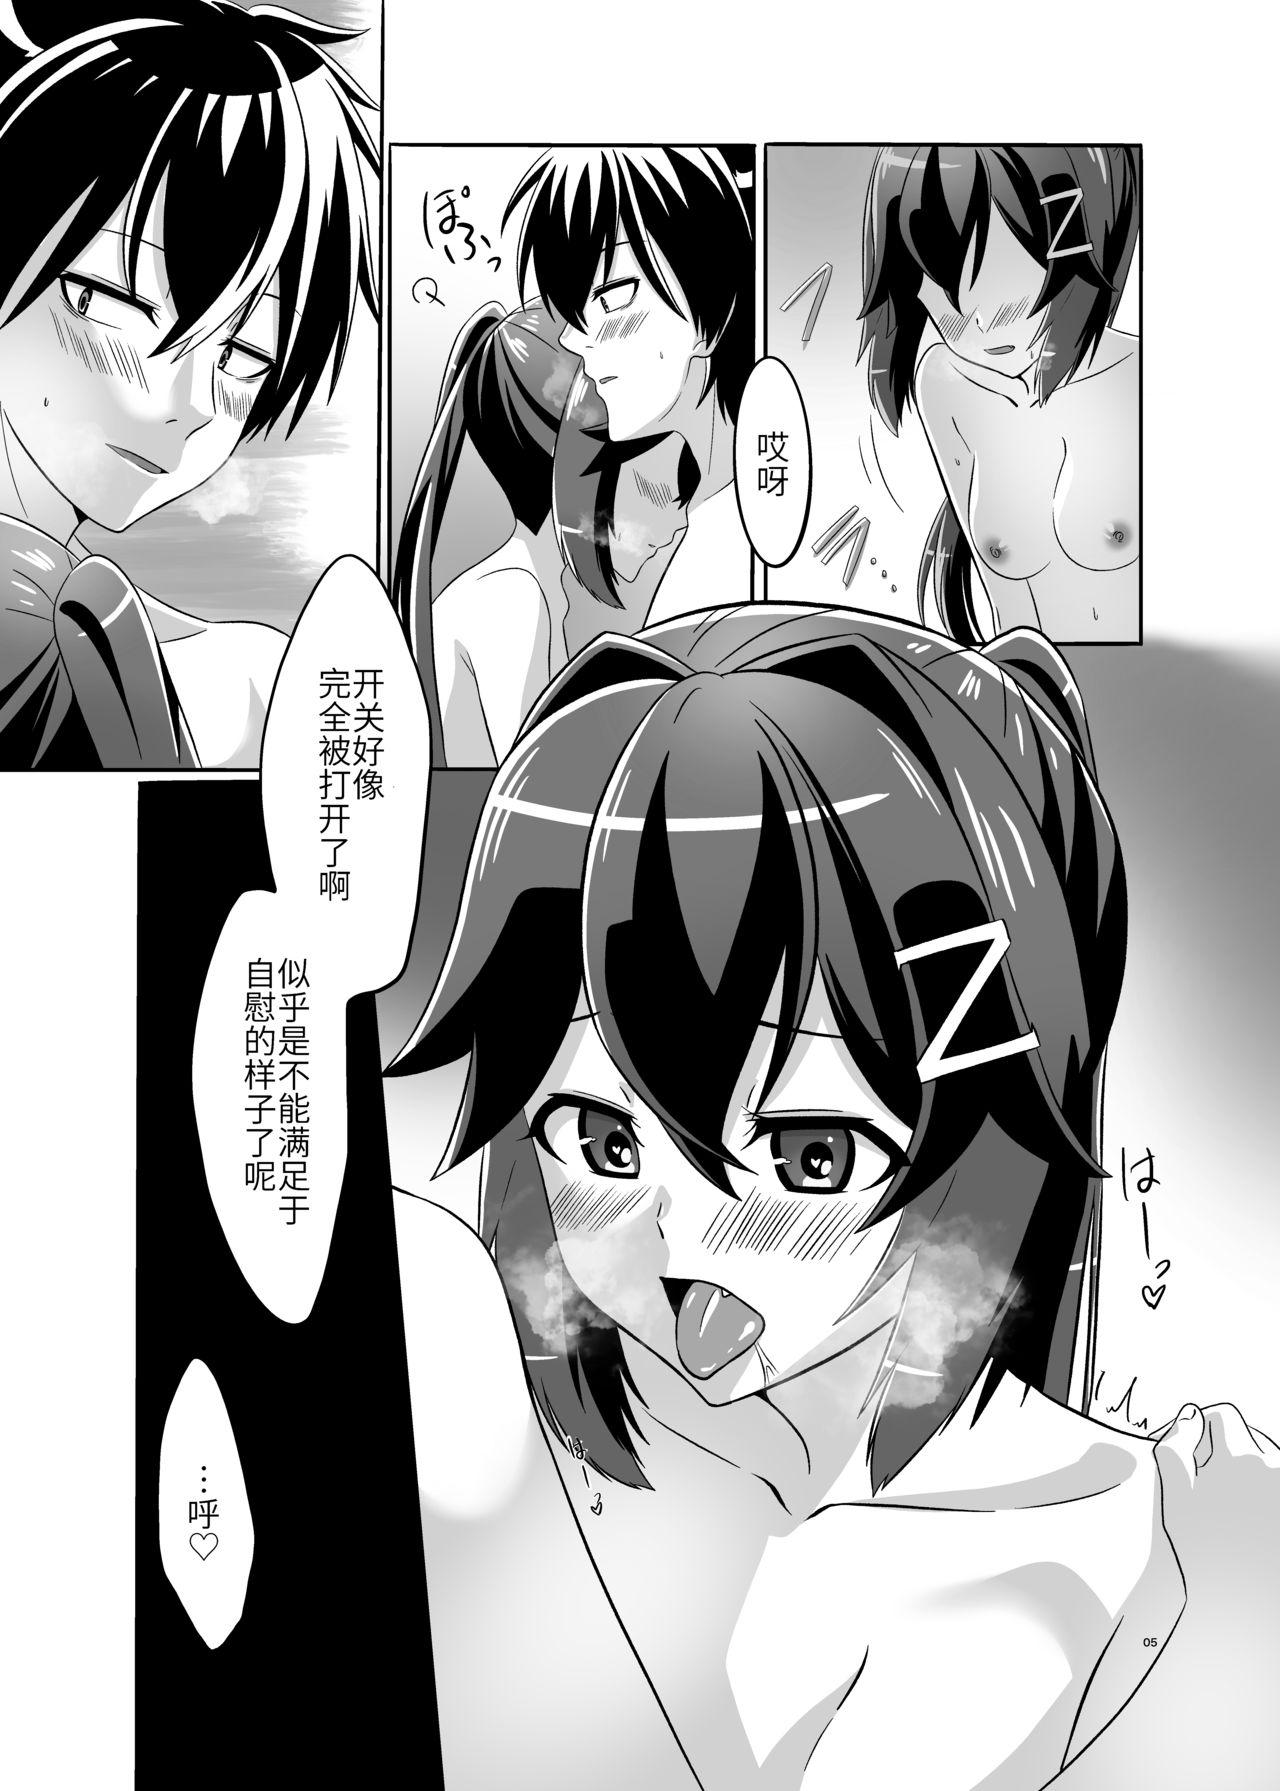 Fucking Itsumo no yoru futari no yotogi⑴ - Warship girls Family Sex - Page 6